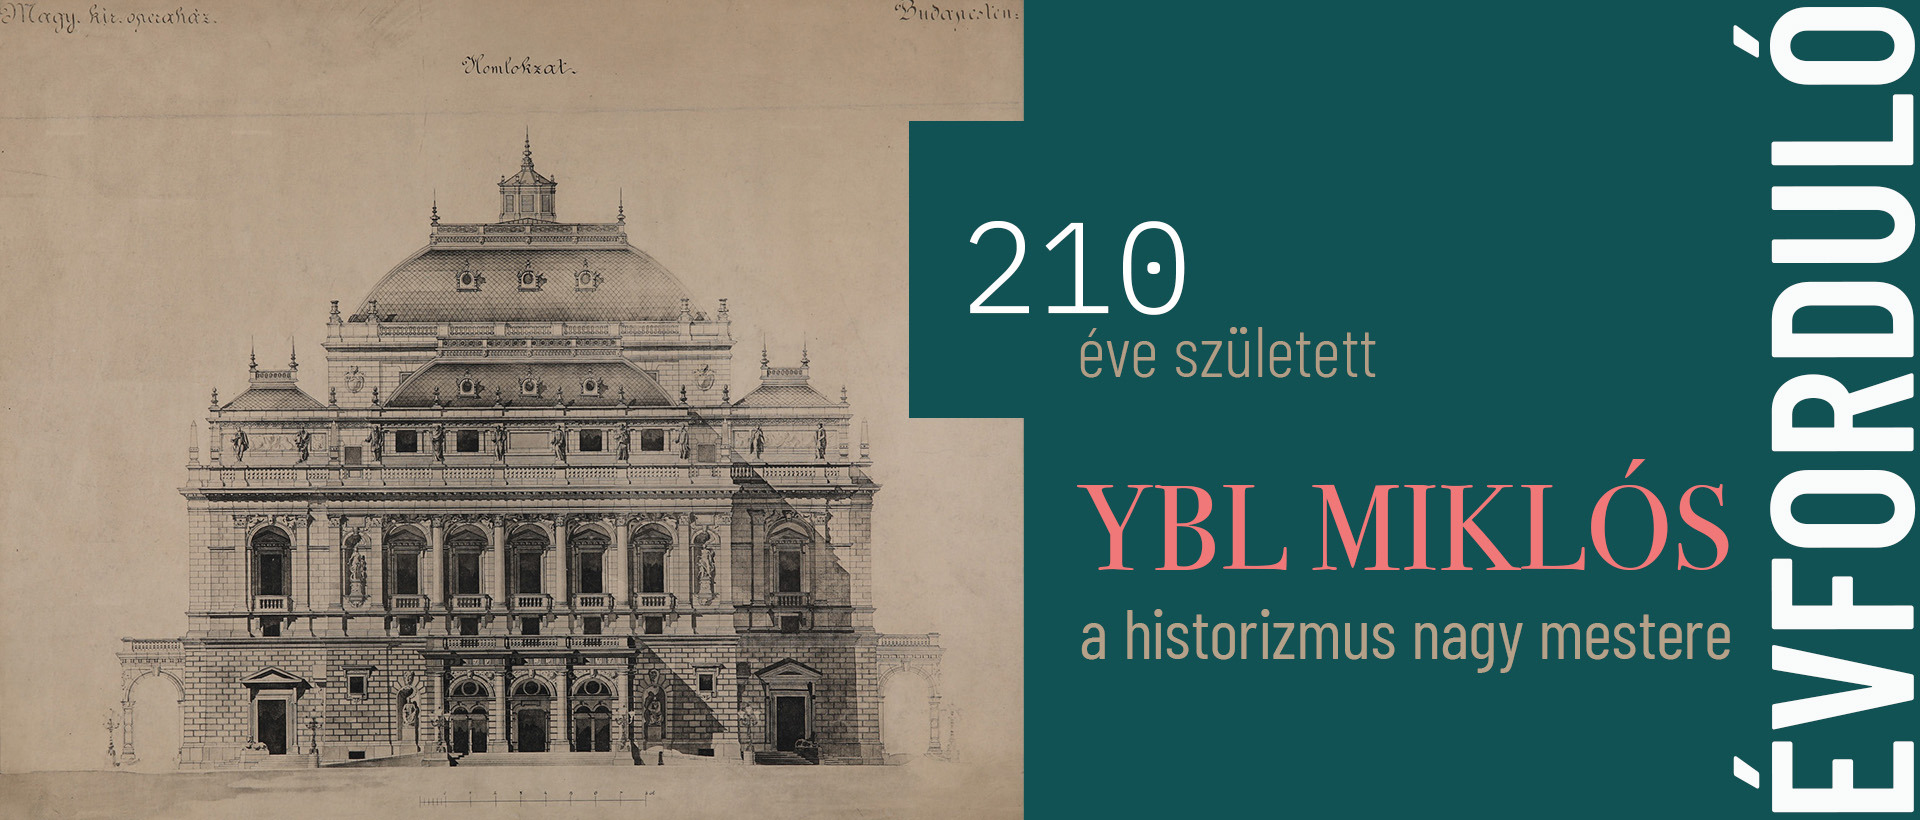 210 éve született a historizmus nagy mestere, Ybl Miklós